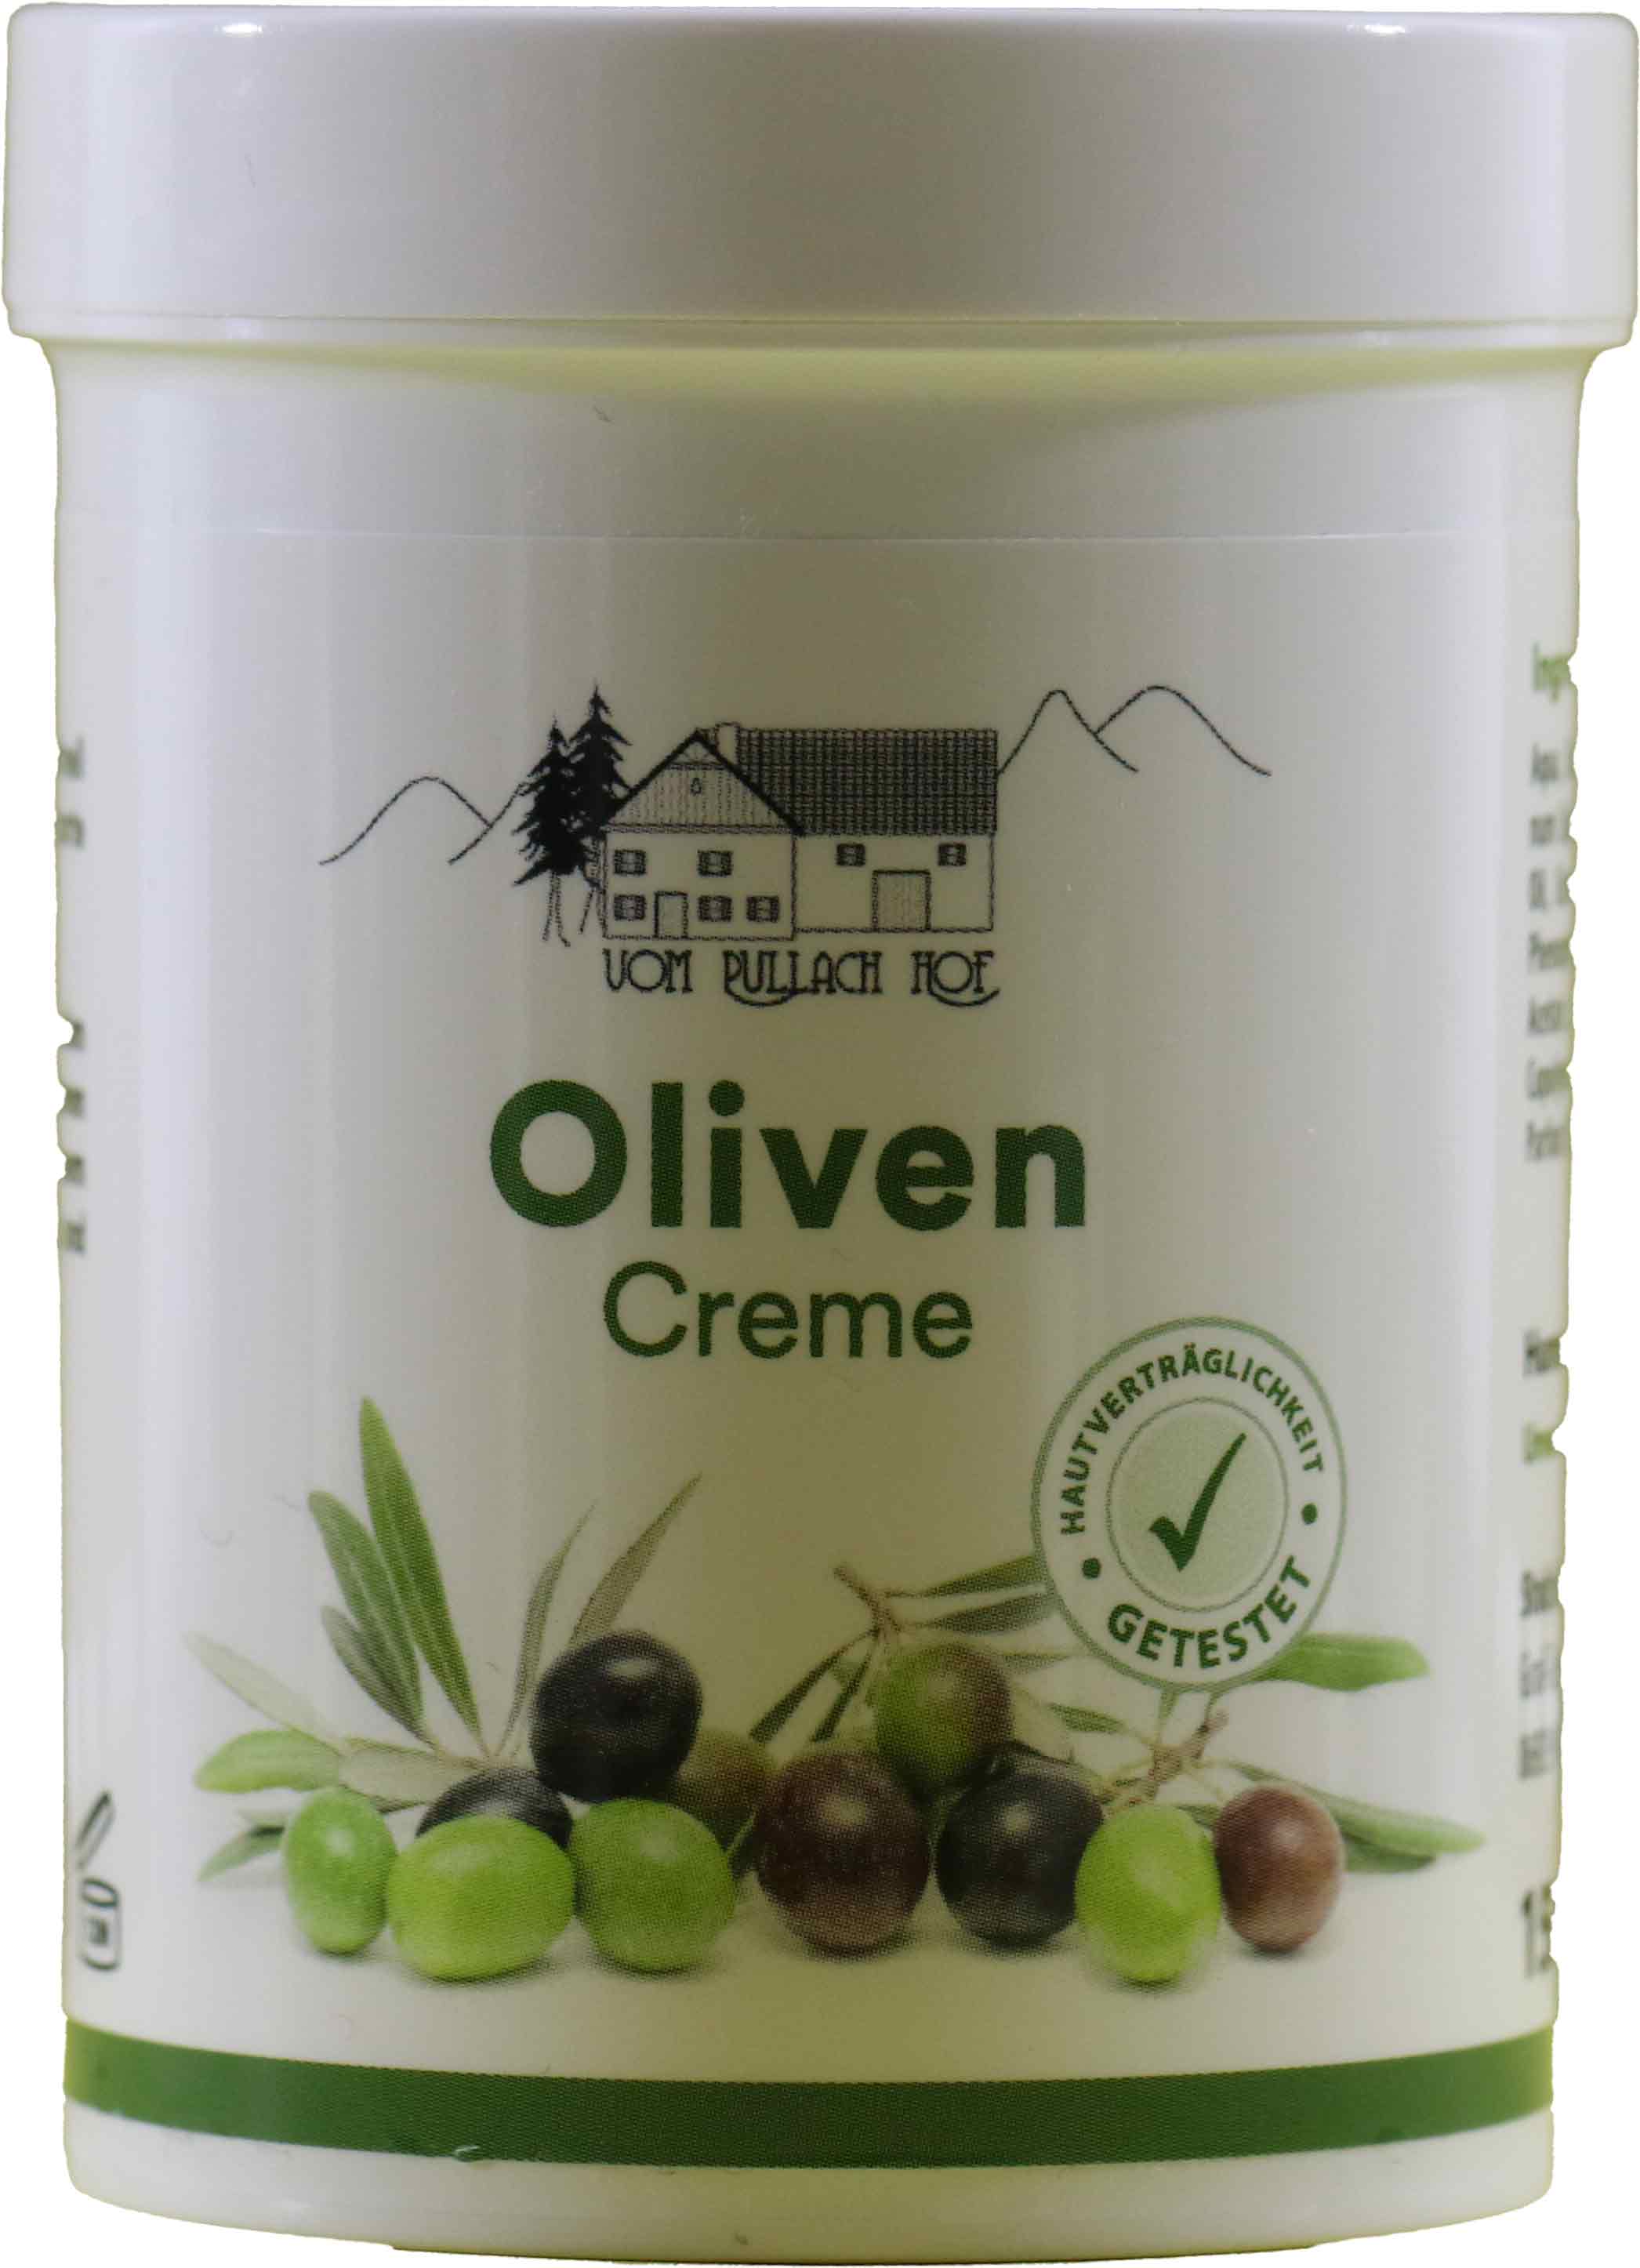 Oliven Creme vom Pullach Hof - 150ml